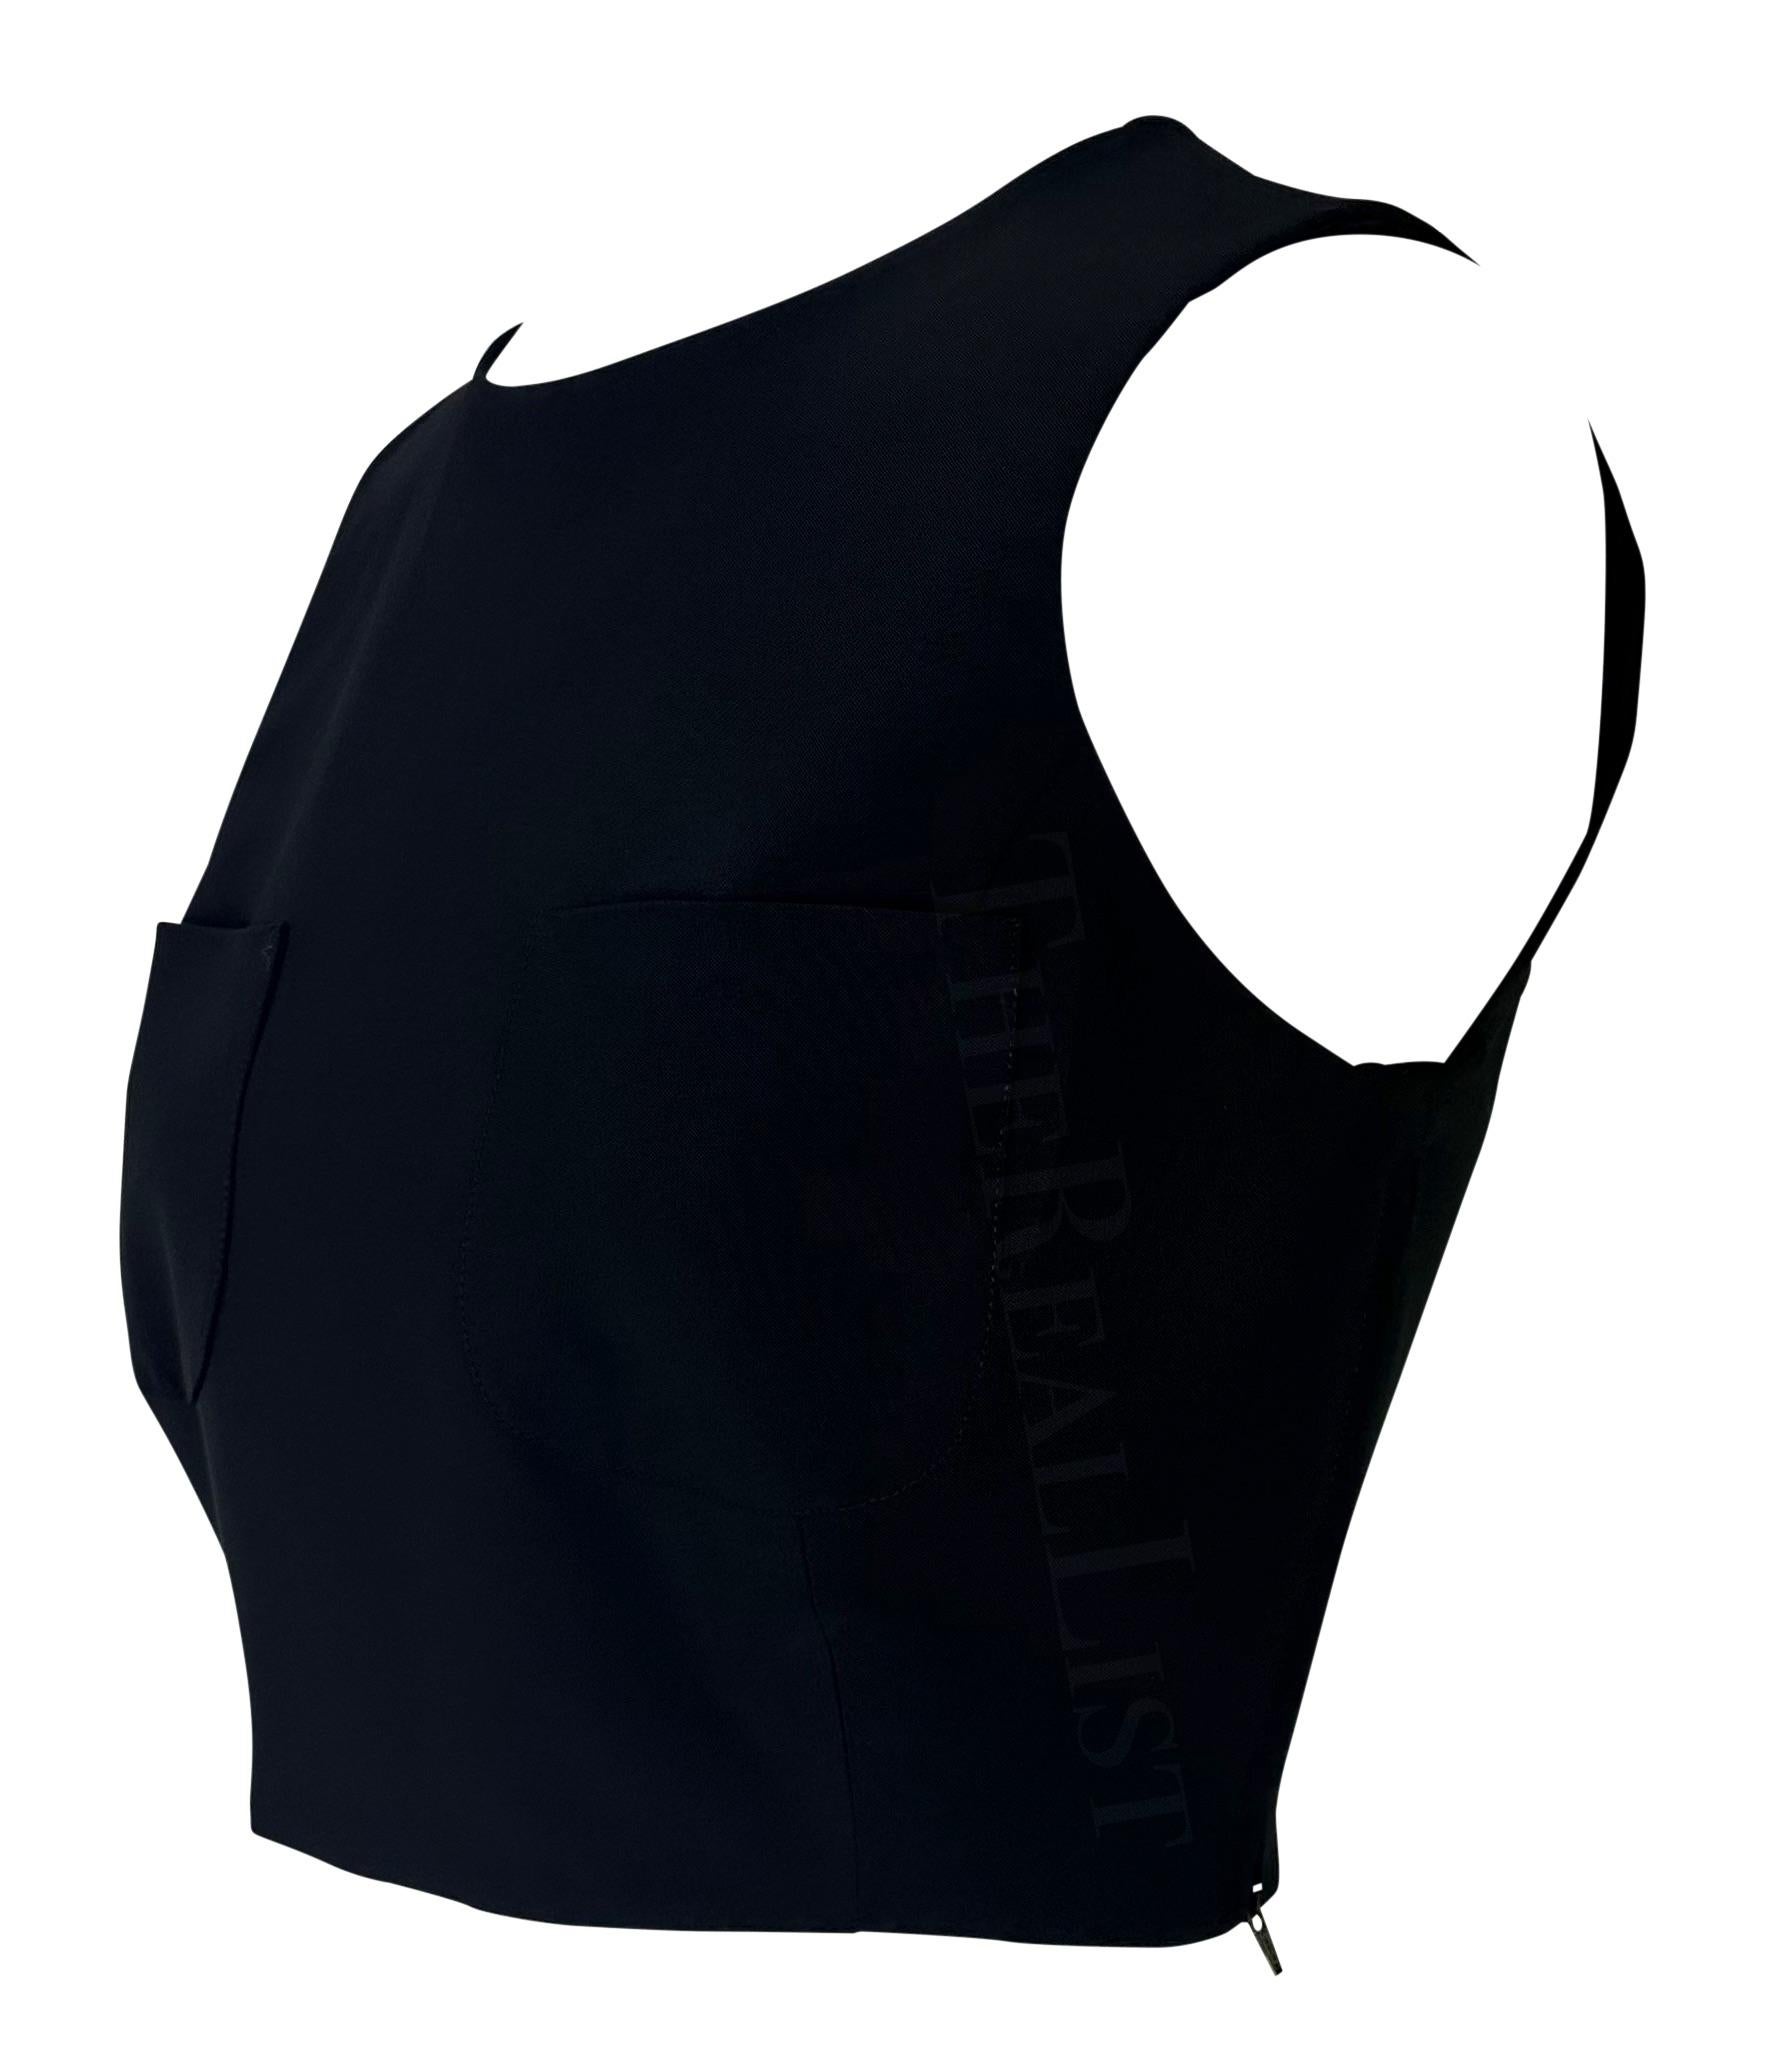 Wir präsentieren ein fabelhaftes schwarzes Gucci Crop Top, entworfen von Tom Ford. Dieses schicke ärmellose Crop-Top aus der Frühjahr/Sommer-Kollektion 1996 hat einen Rundhalsausschnitt und zwei Taschen im Brustbereich. Ergänzen Sie Ihre Garderobe